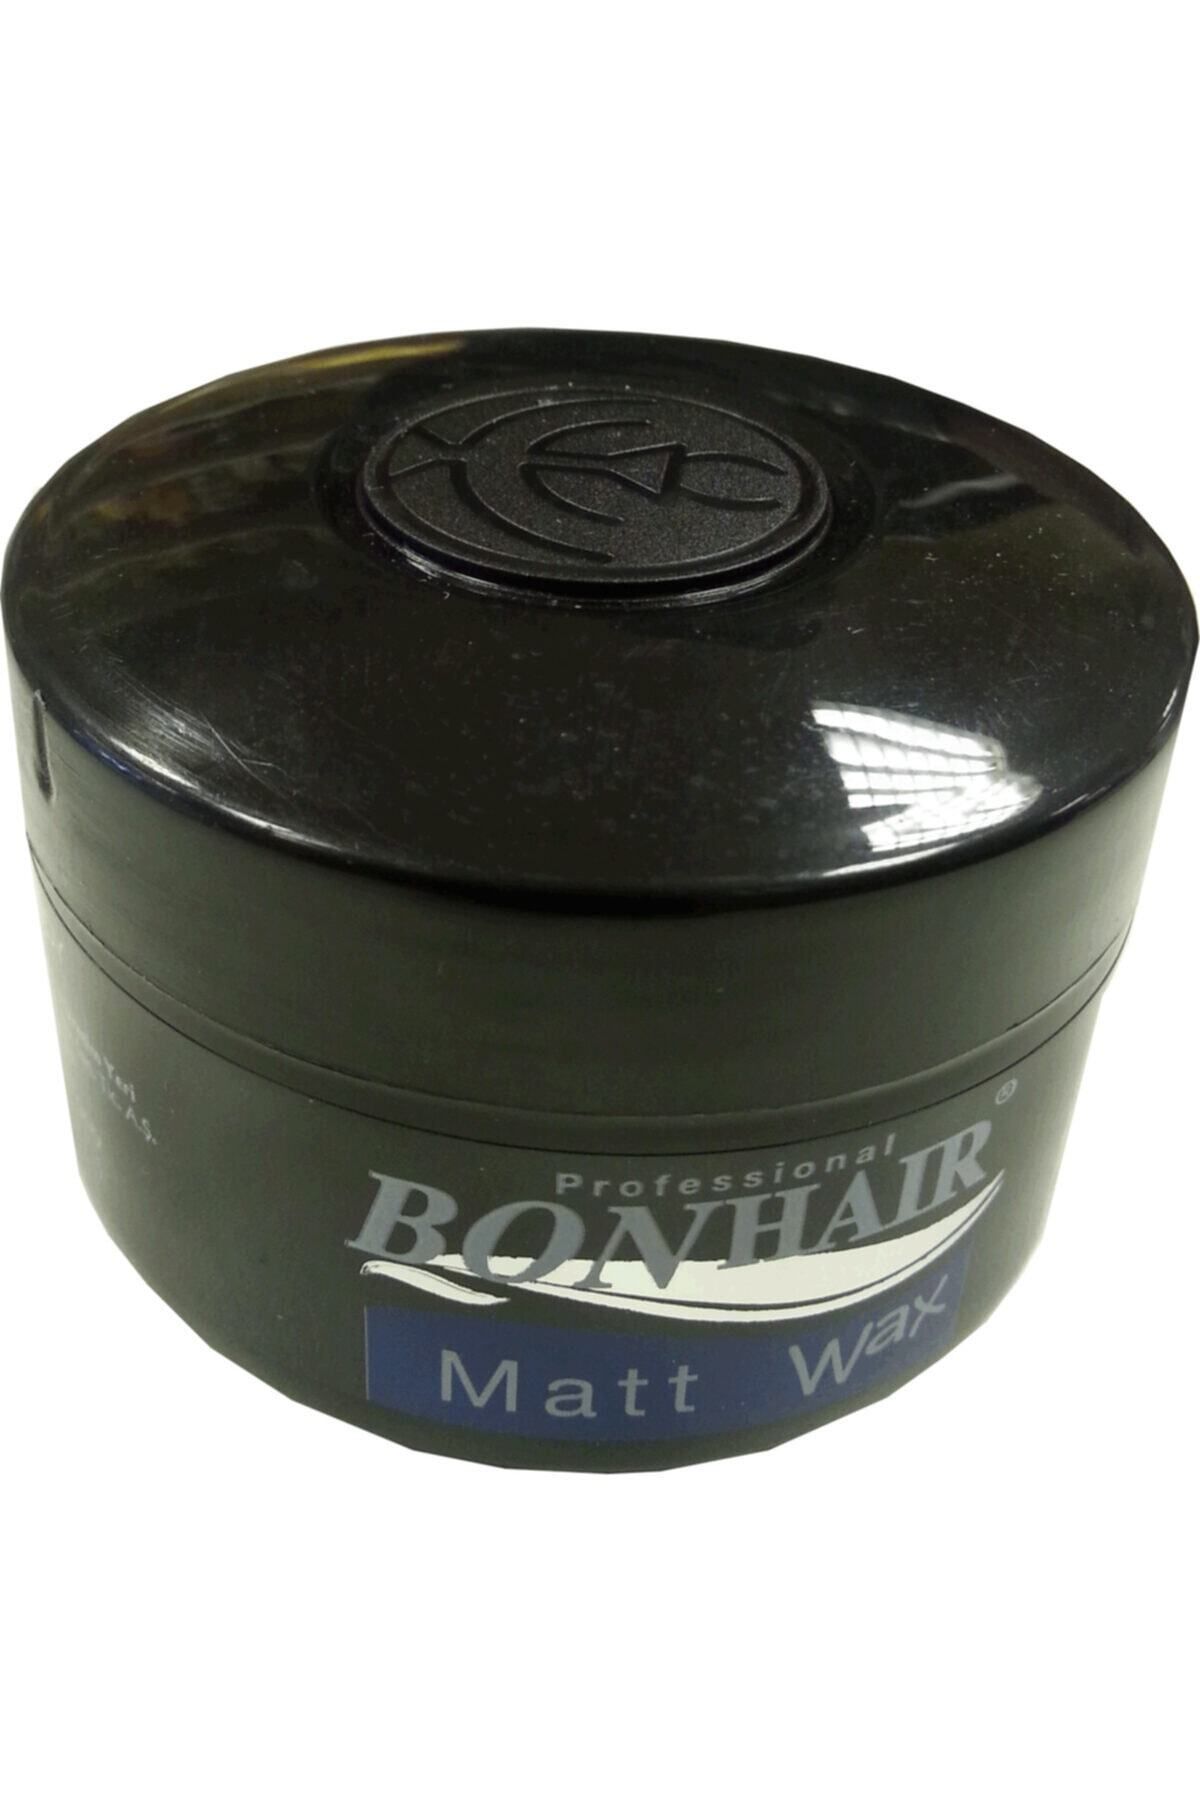 Bonhair Matt Wax 140 ml